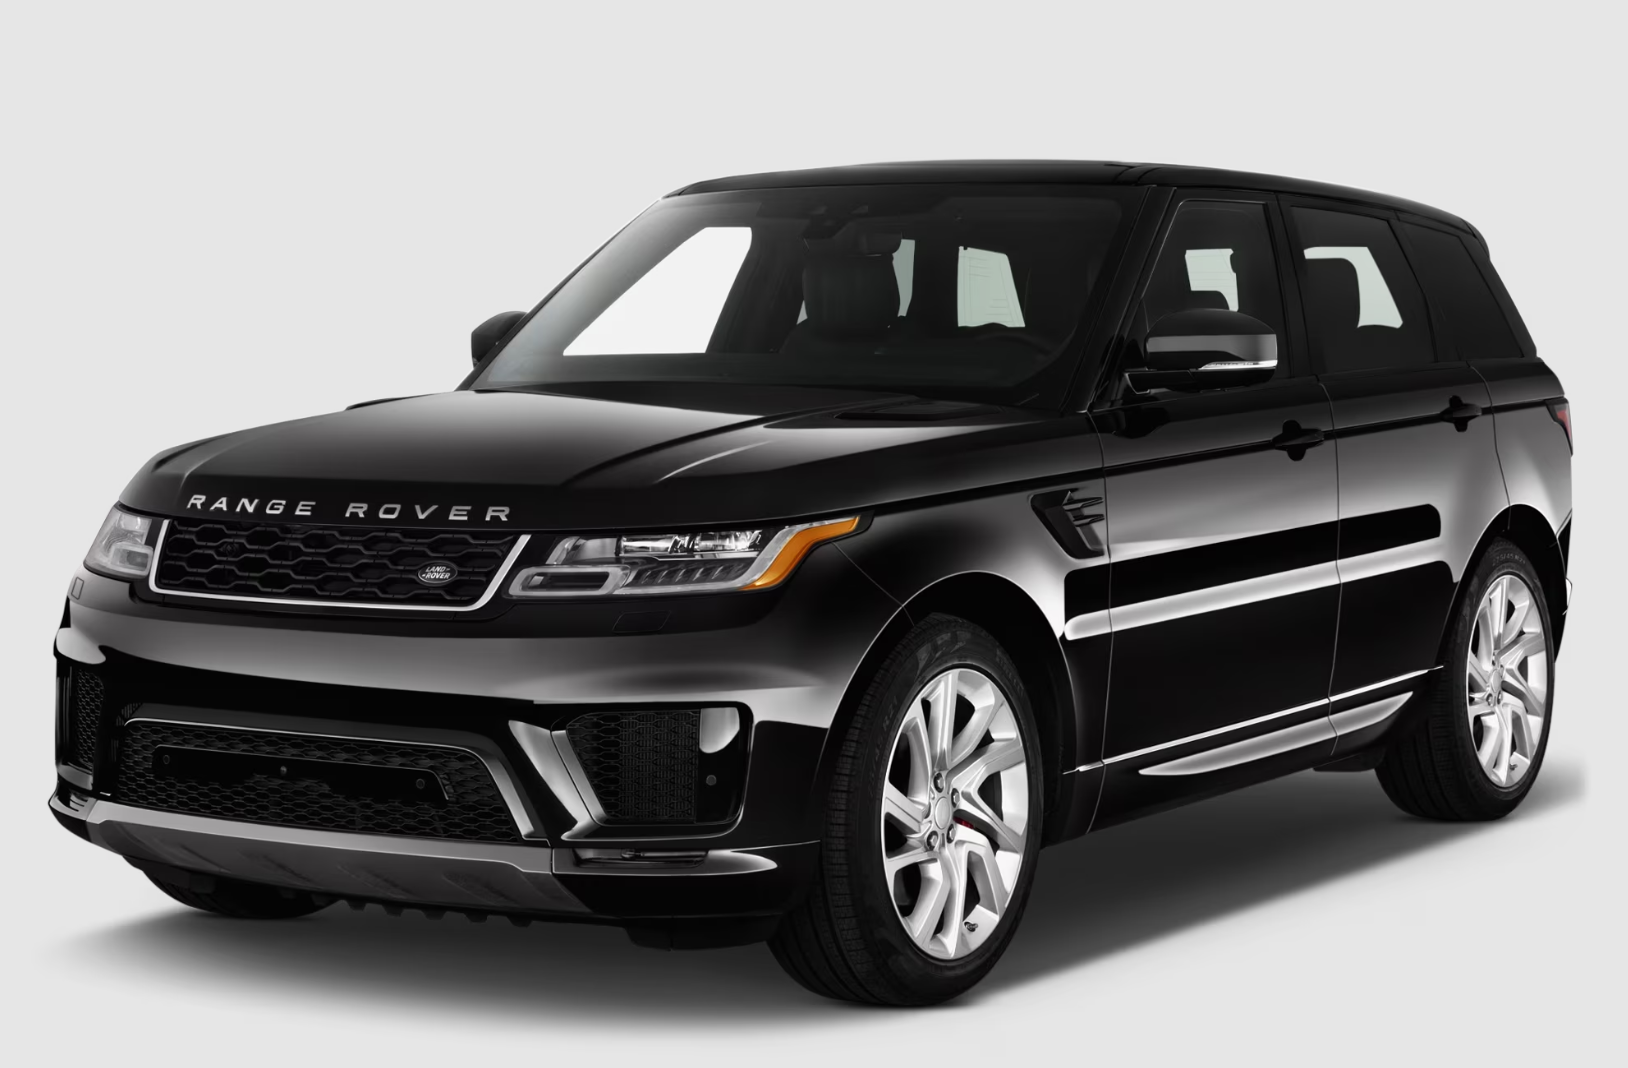 Range Rover is a cheap car rental service in Dubai.